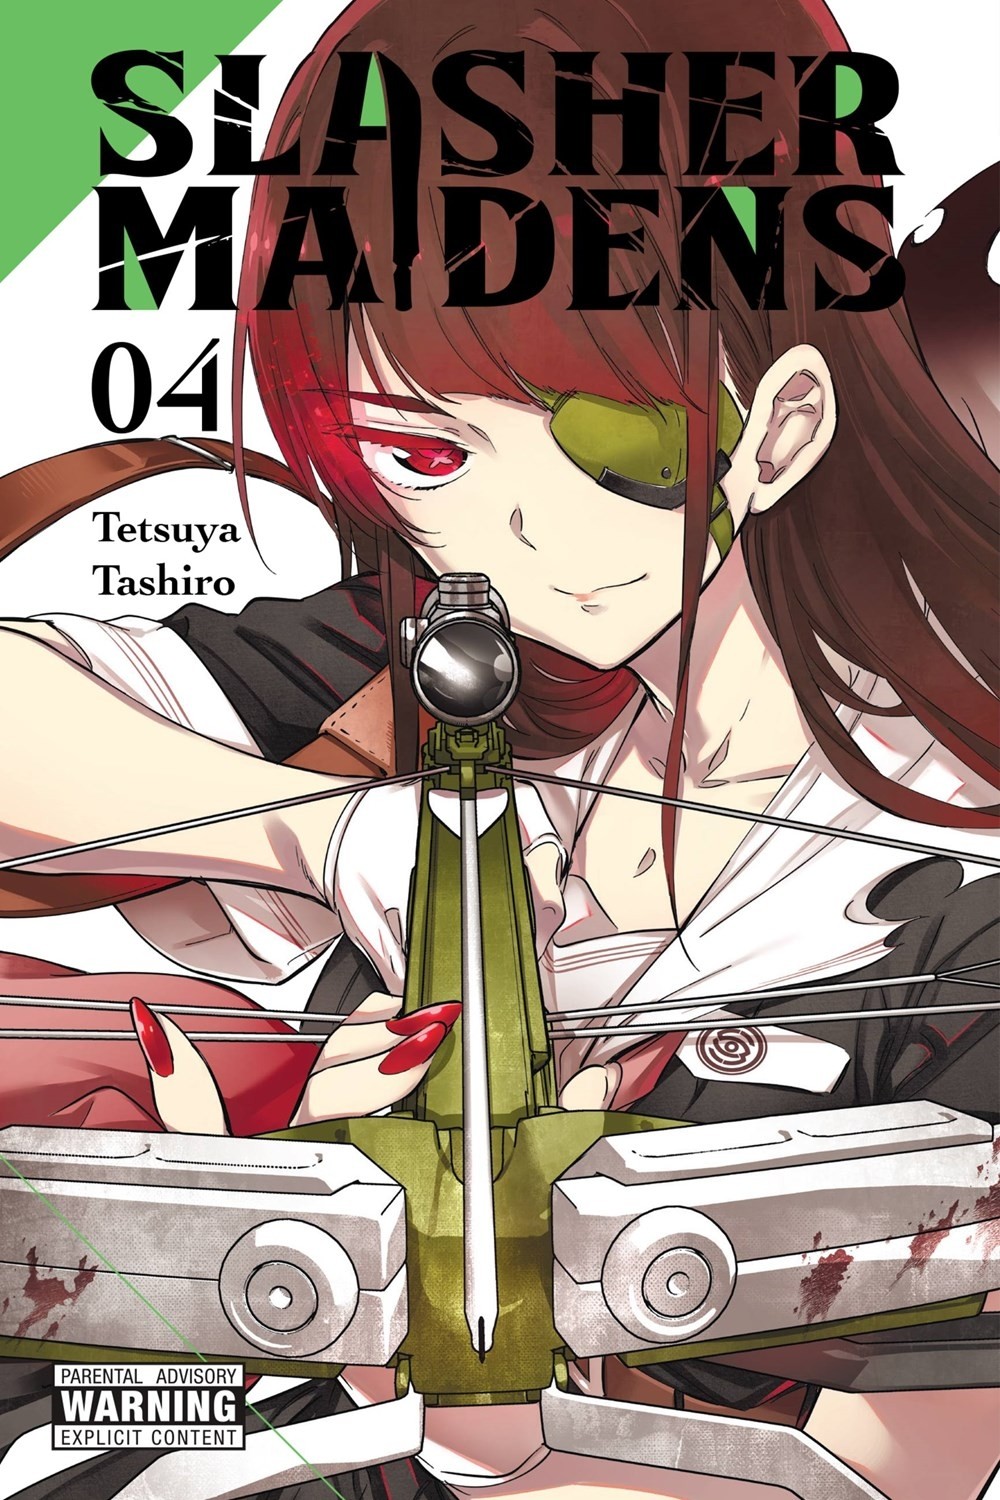 Slasher Maidens, Vol. 04